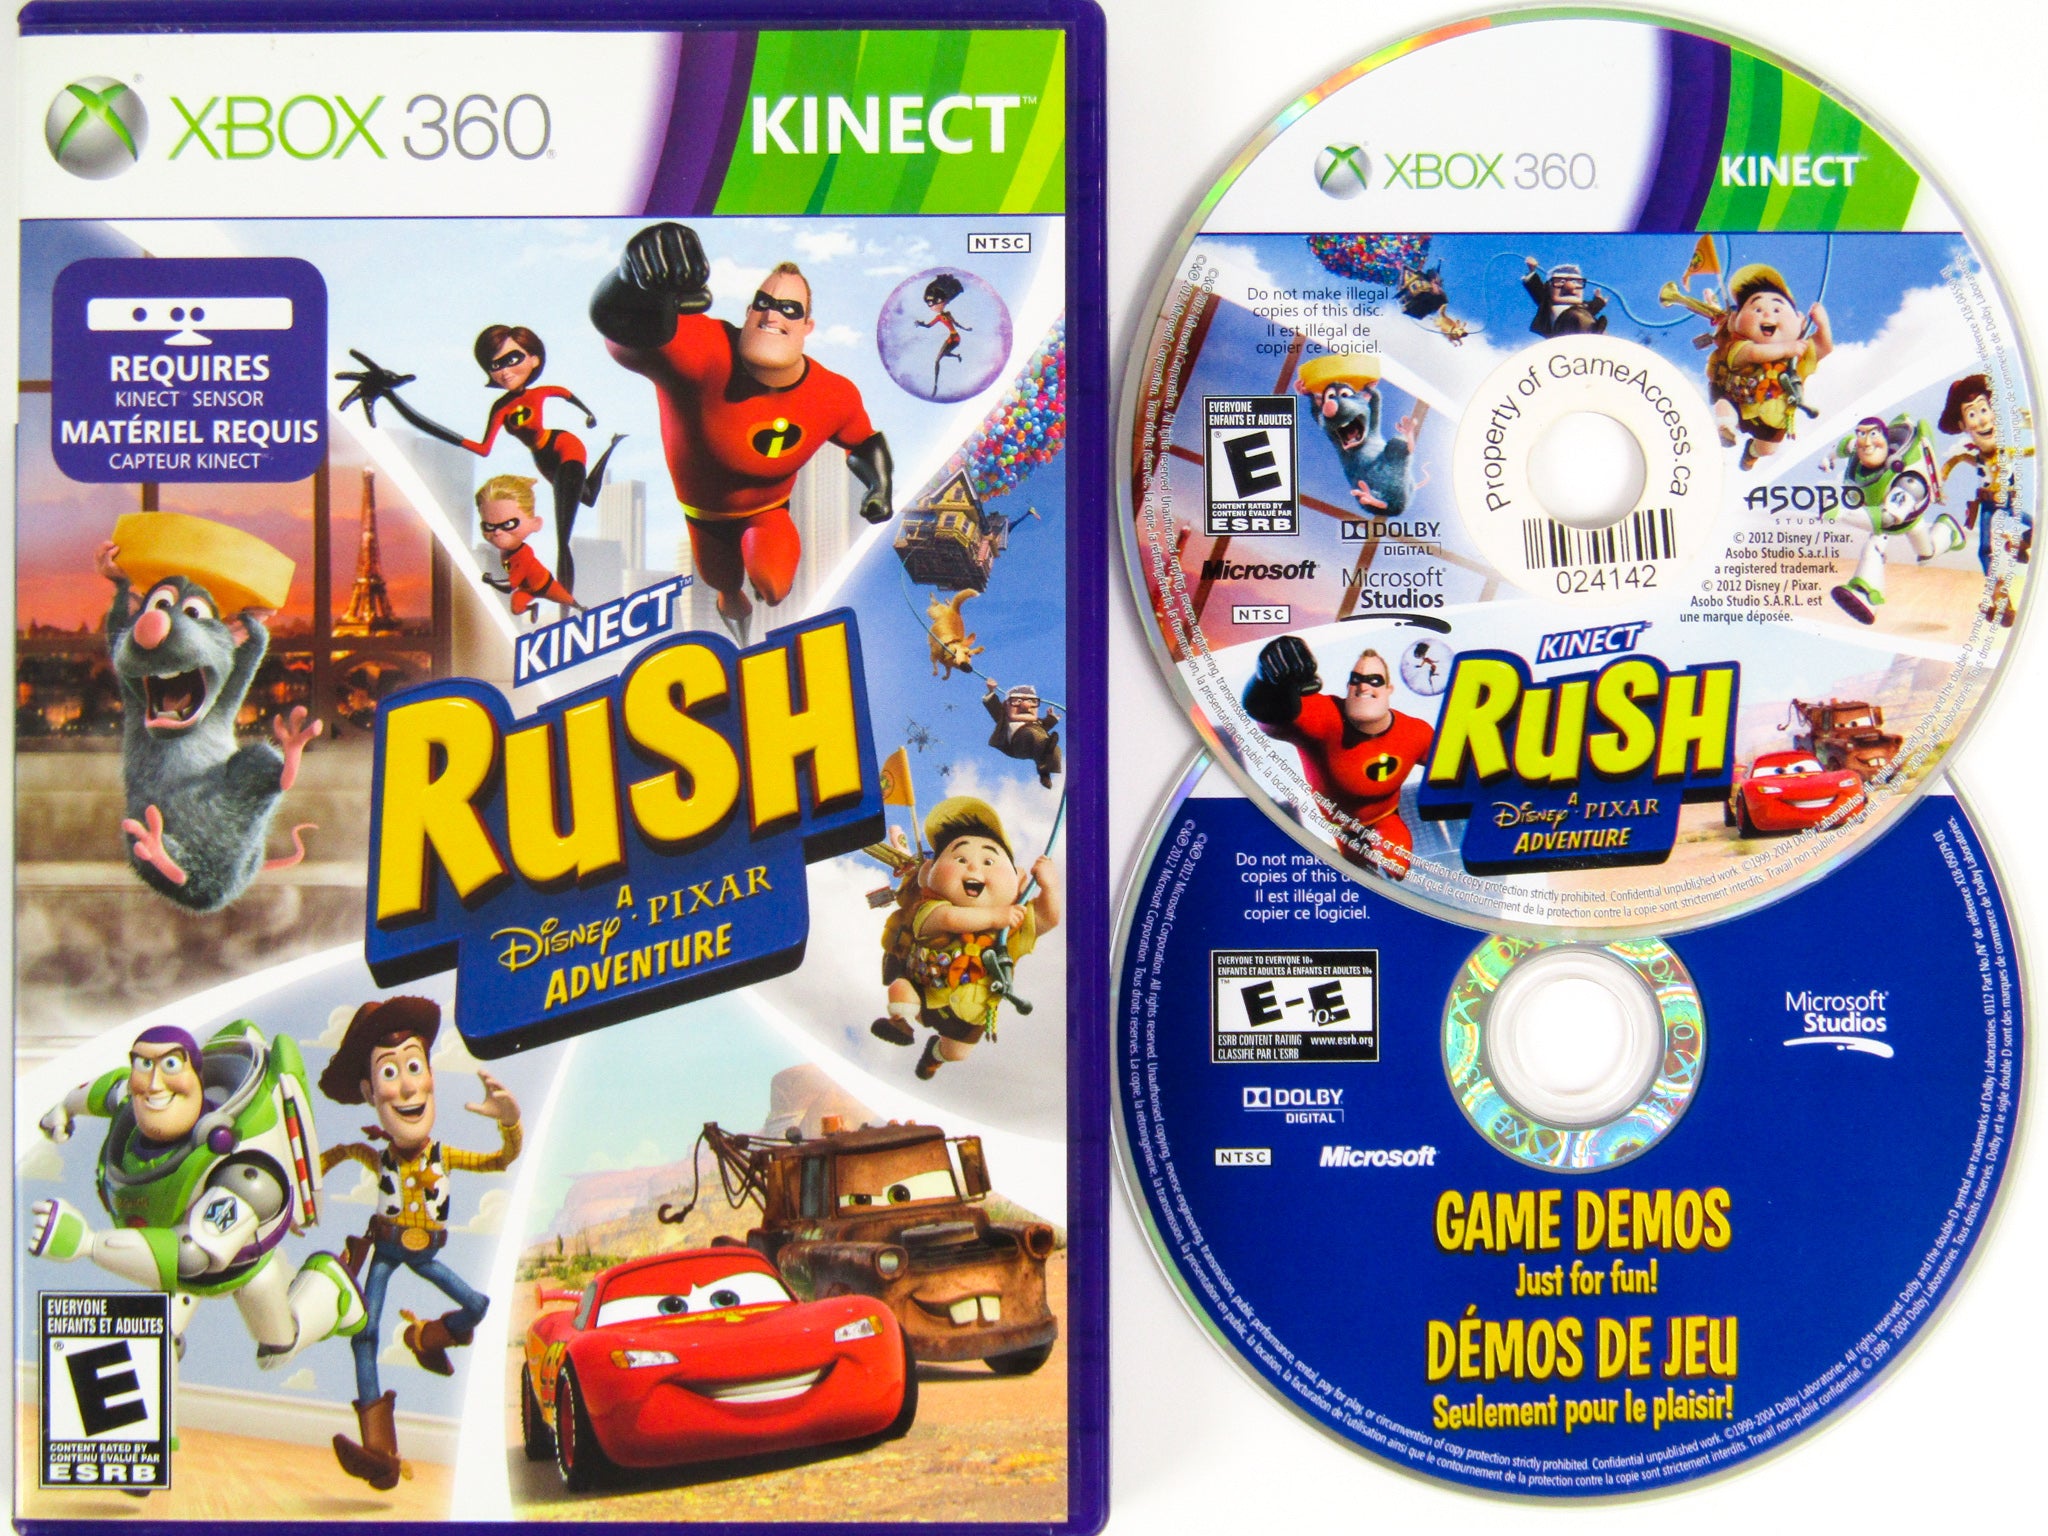 Kinect Rush: Uma Aventura Disney (Usado) - Xbox One - Shock Games